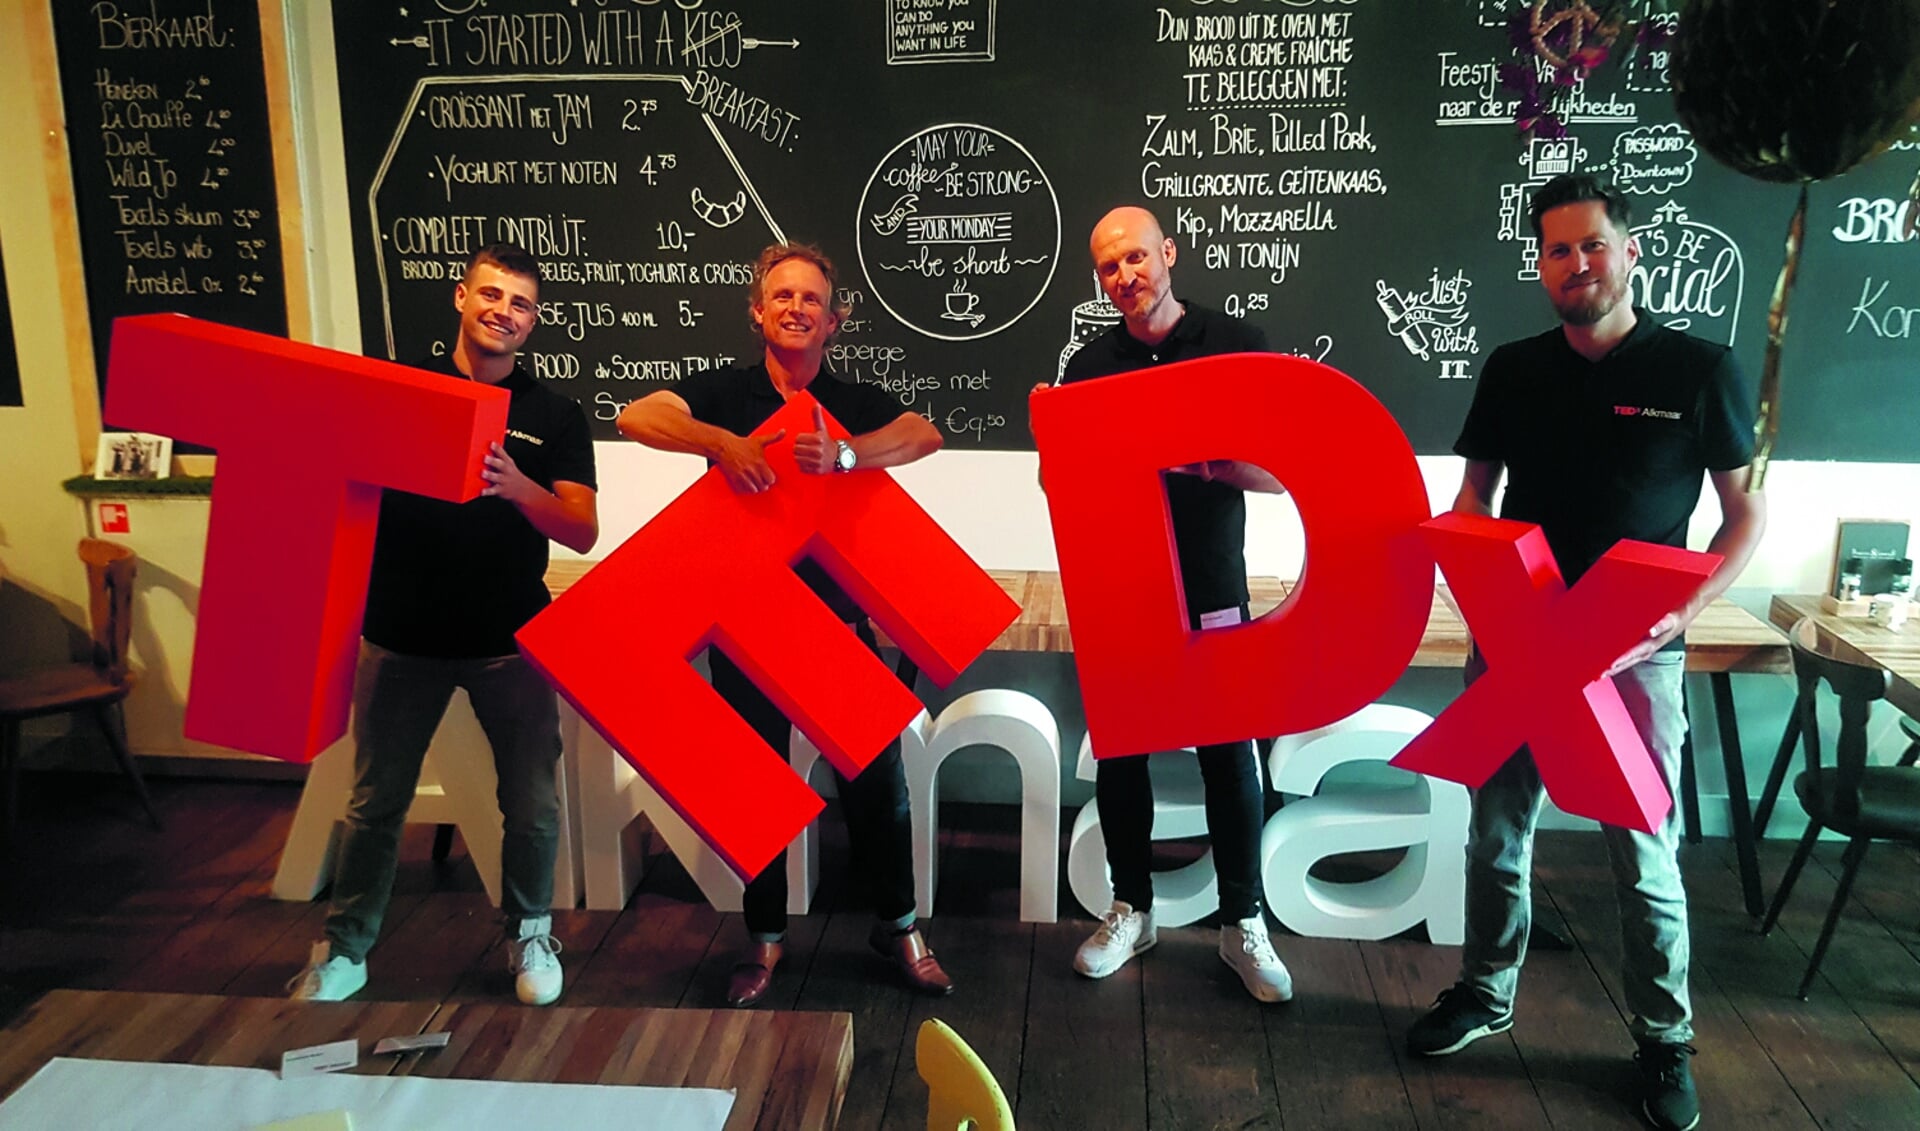 TEDxAlkmaar teamleden Cas Kaandorp, Edwin Stolk, Bart van Koppen en Bart Verbiest. (Foto: aangeleverd)